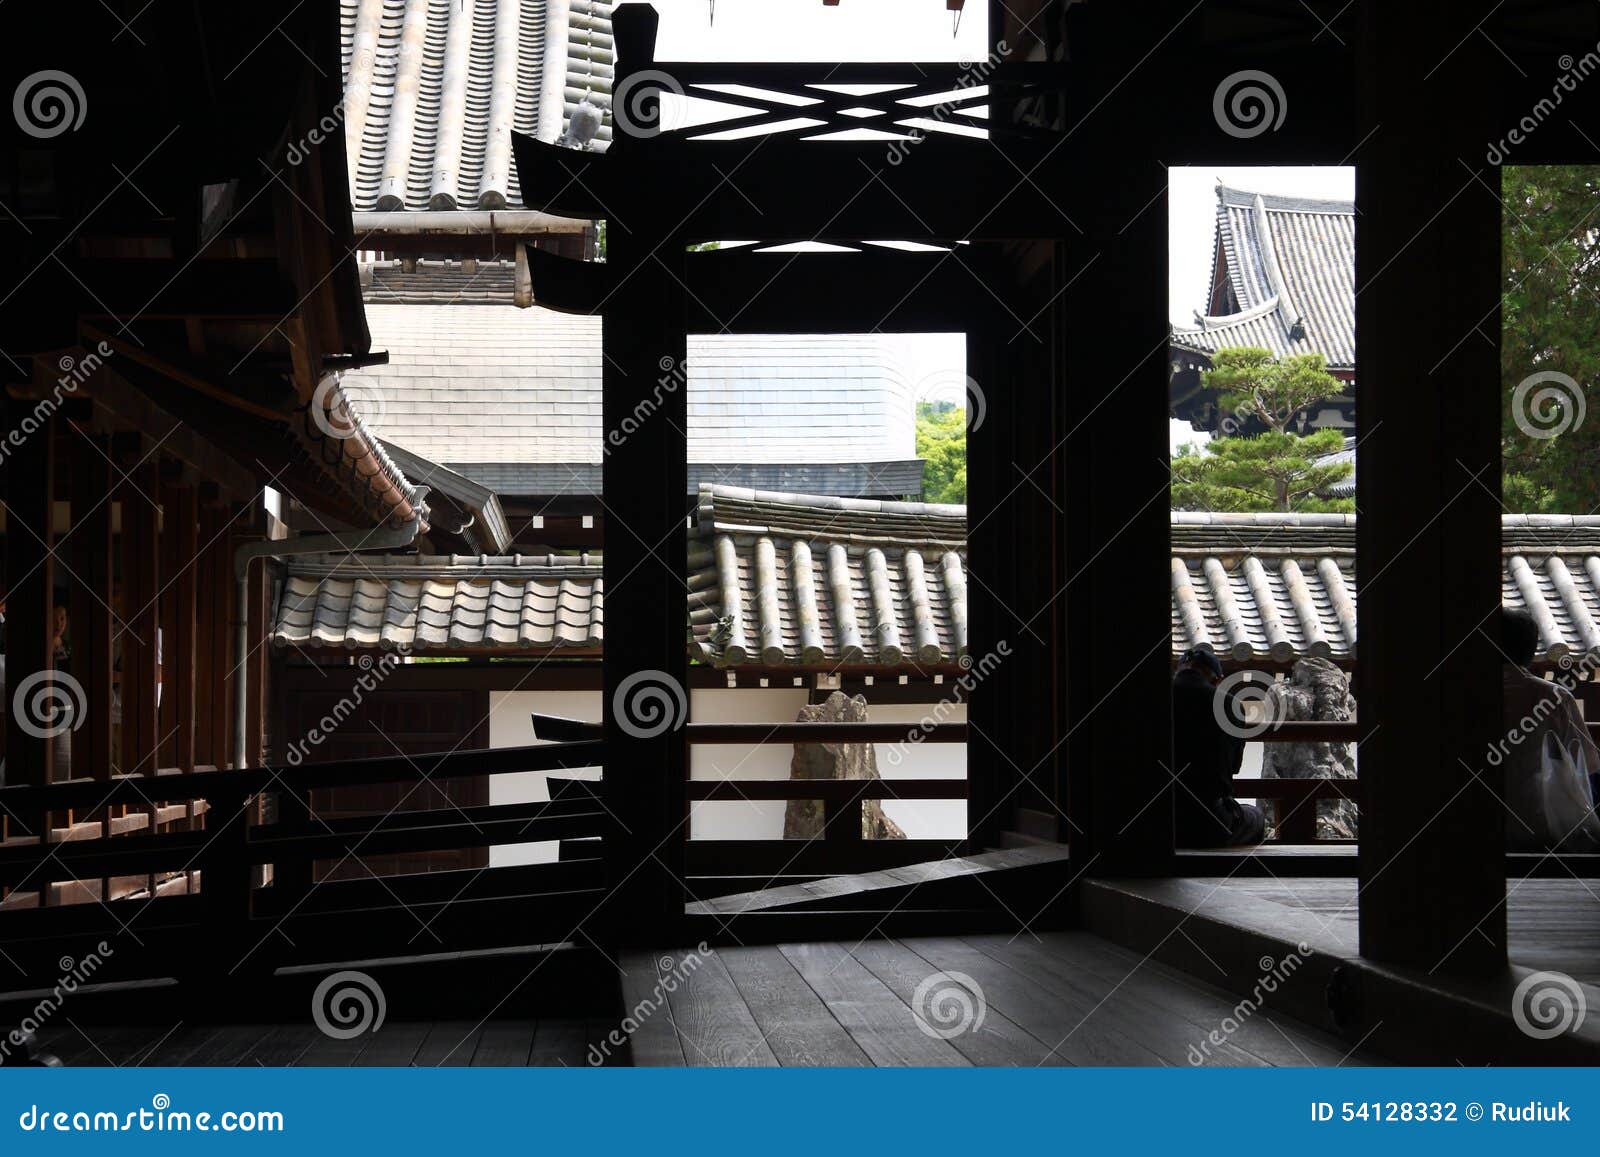 Japanische Architektur. Innerhalb eines japanischen Tempels: Korridore, Spalten und Gerichte mit Zen arbeitet im Garten